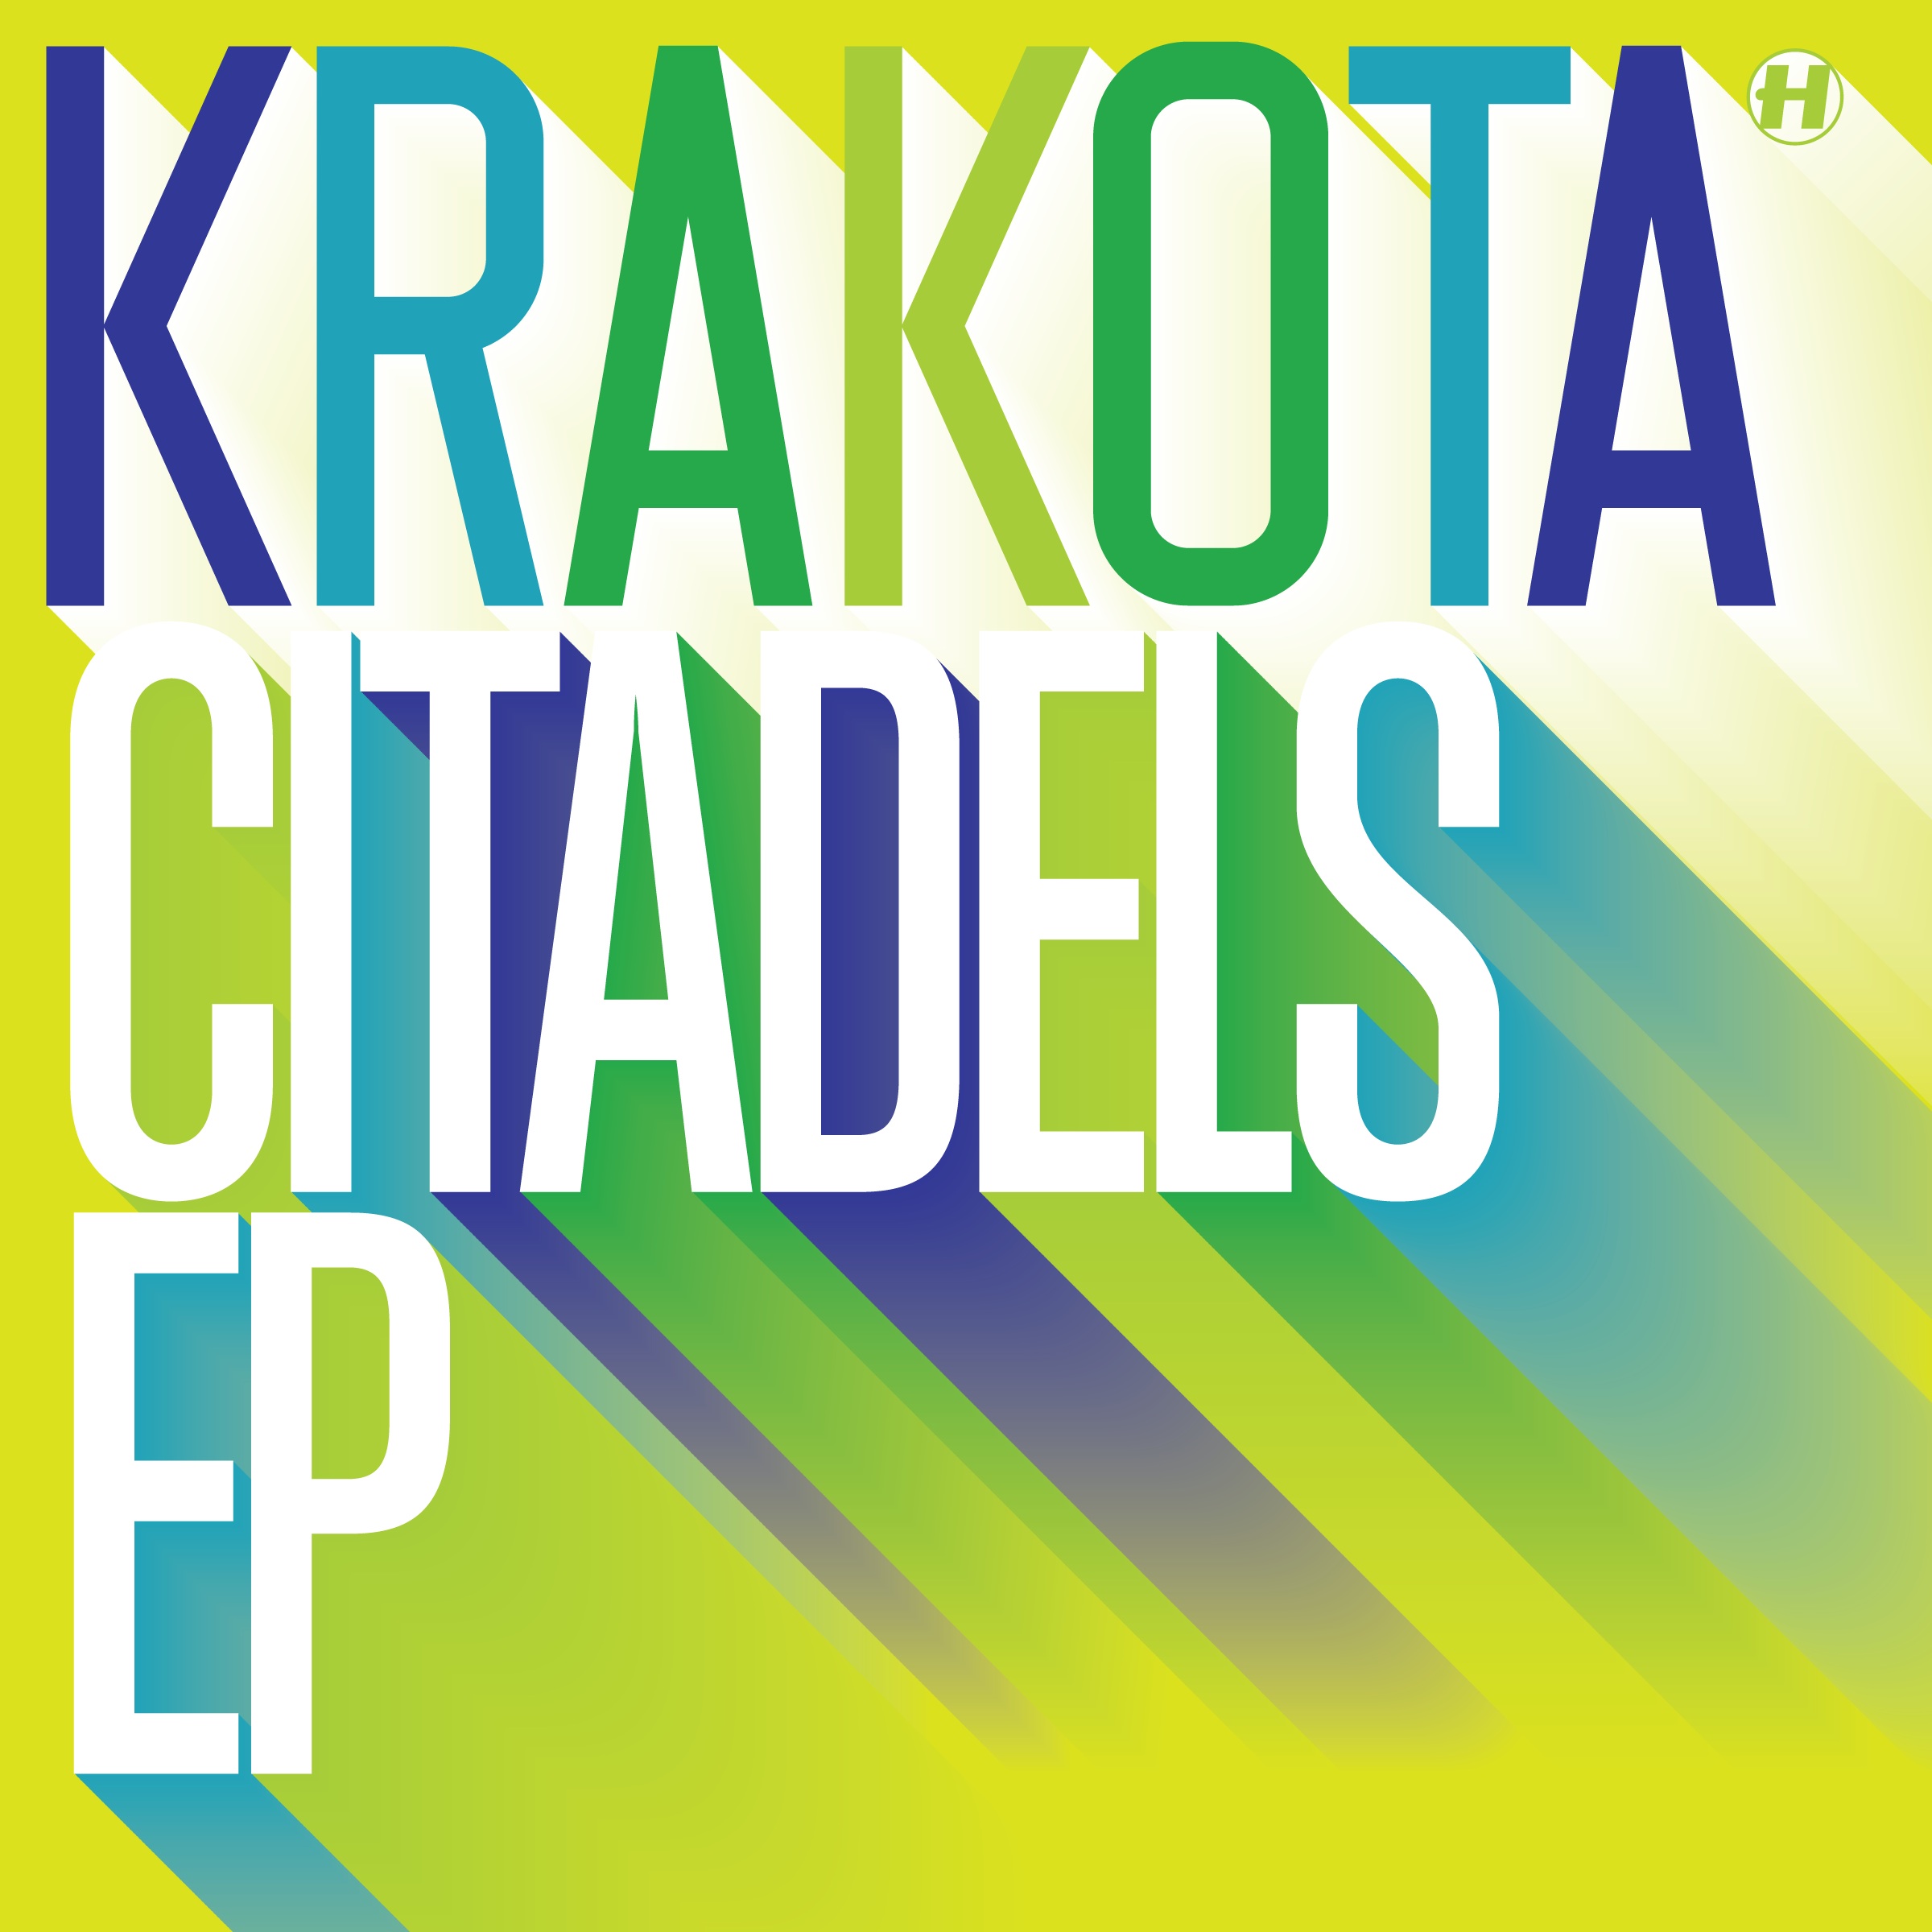 Krakota/CITADELS 12"